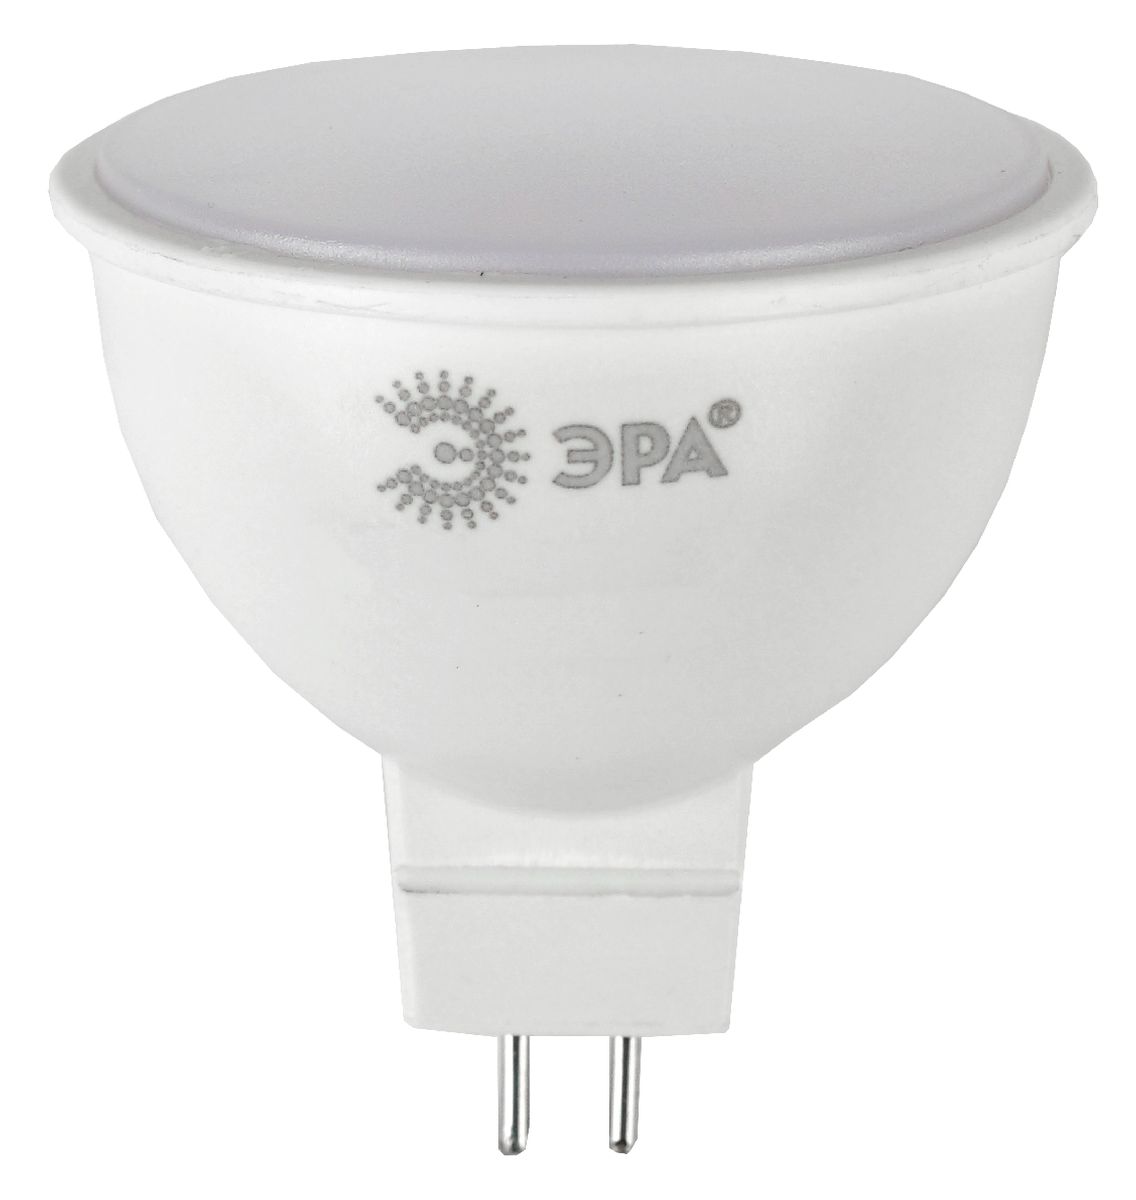 Лампа светодиодная Эра GU5.3 12W 4000K LED MR16-12W-840-GU5.3 Б0040888